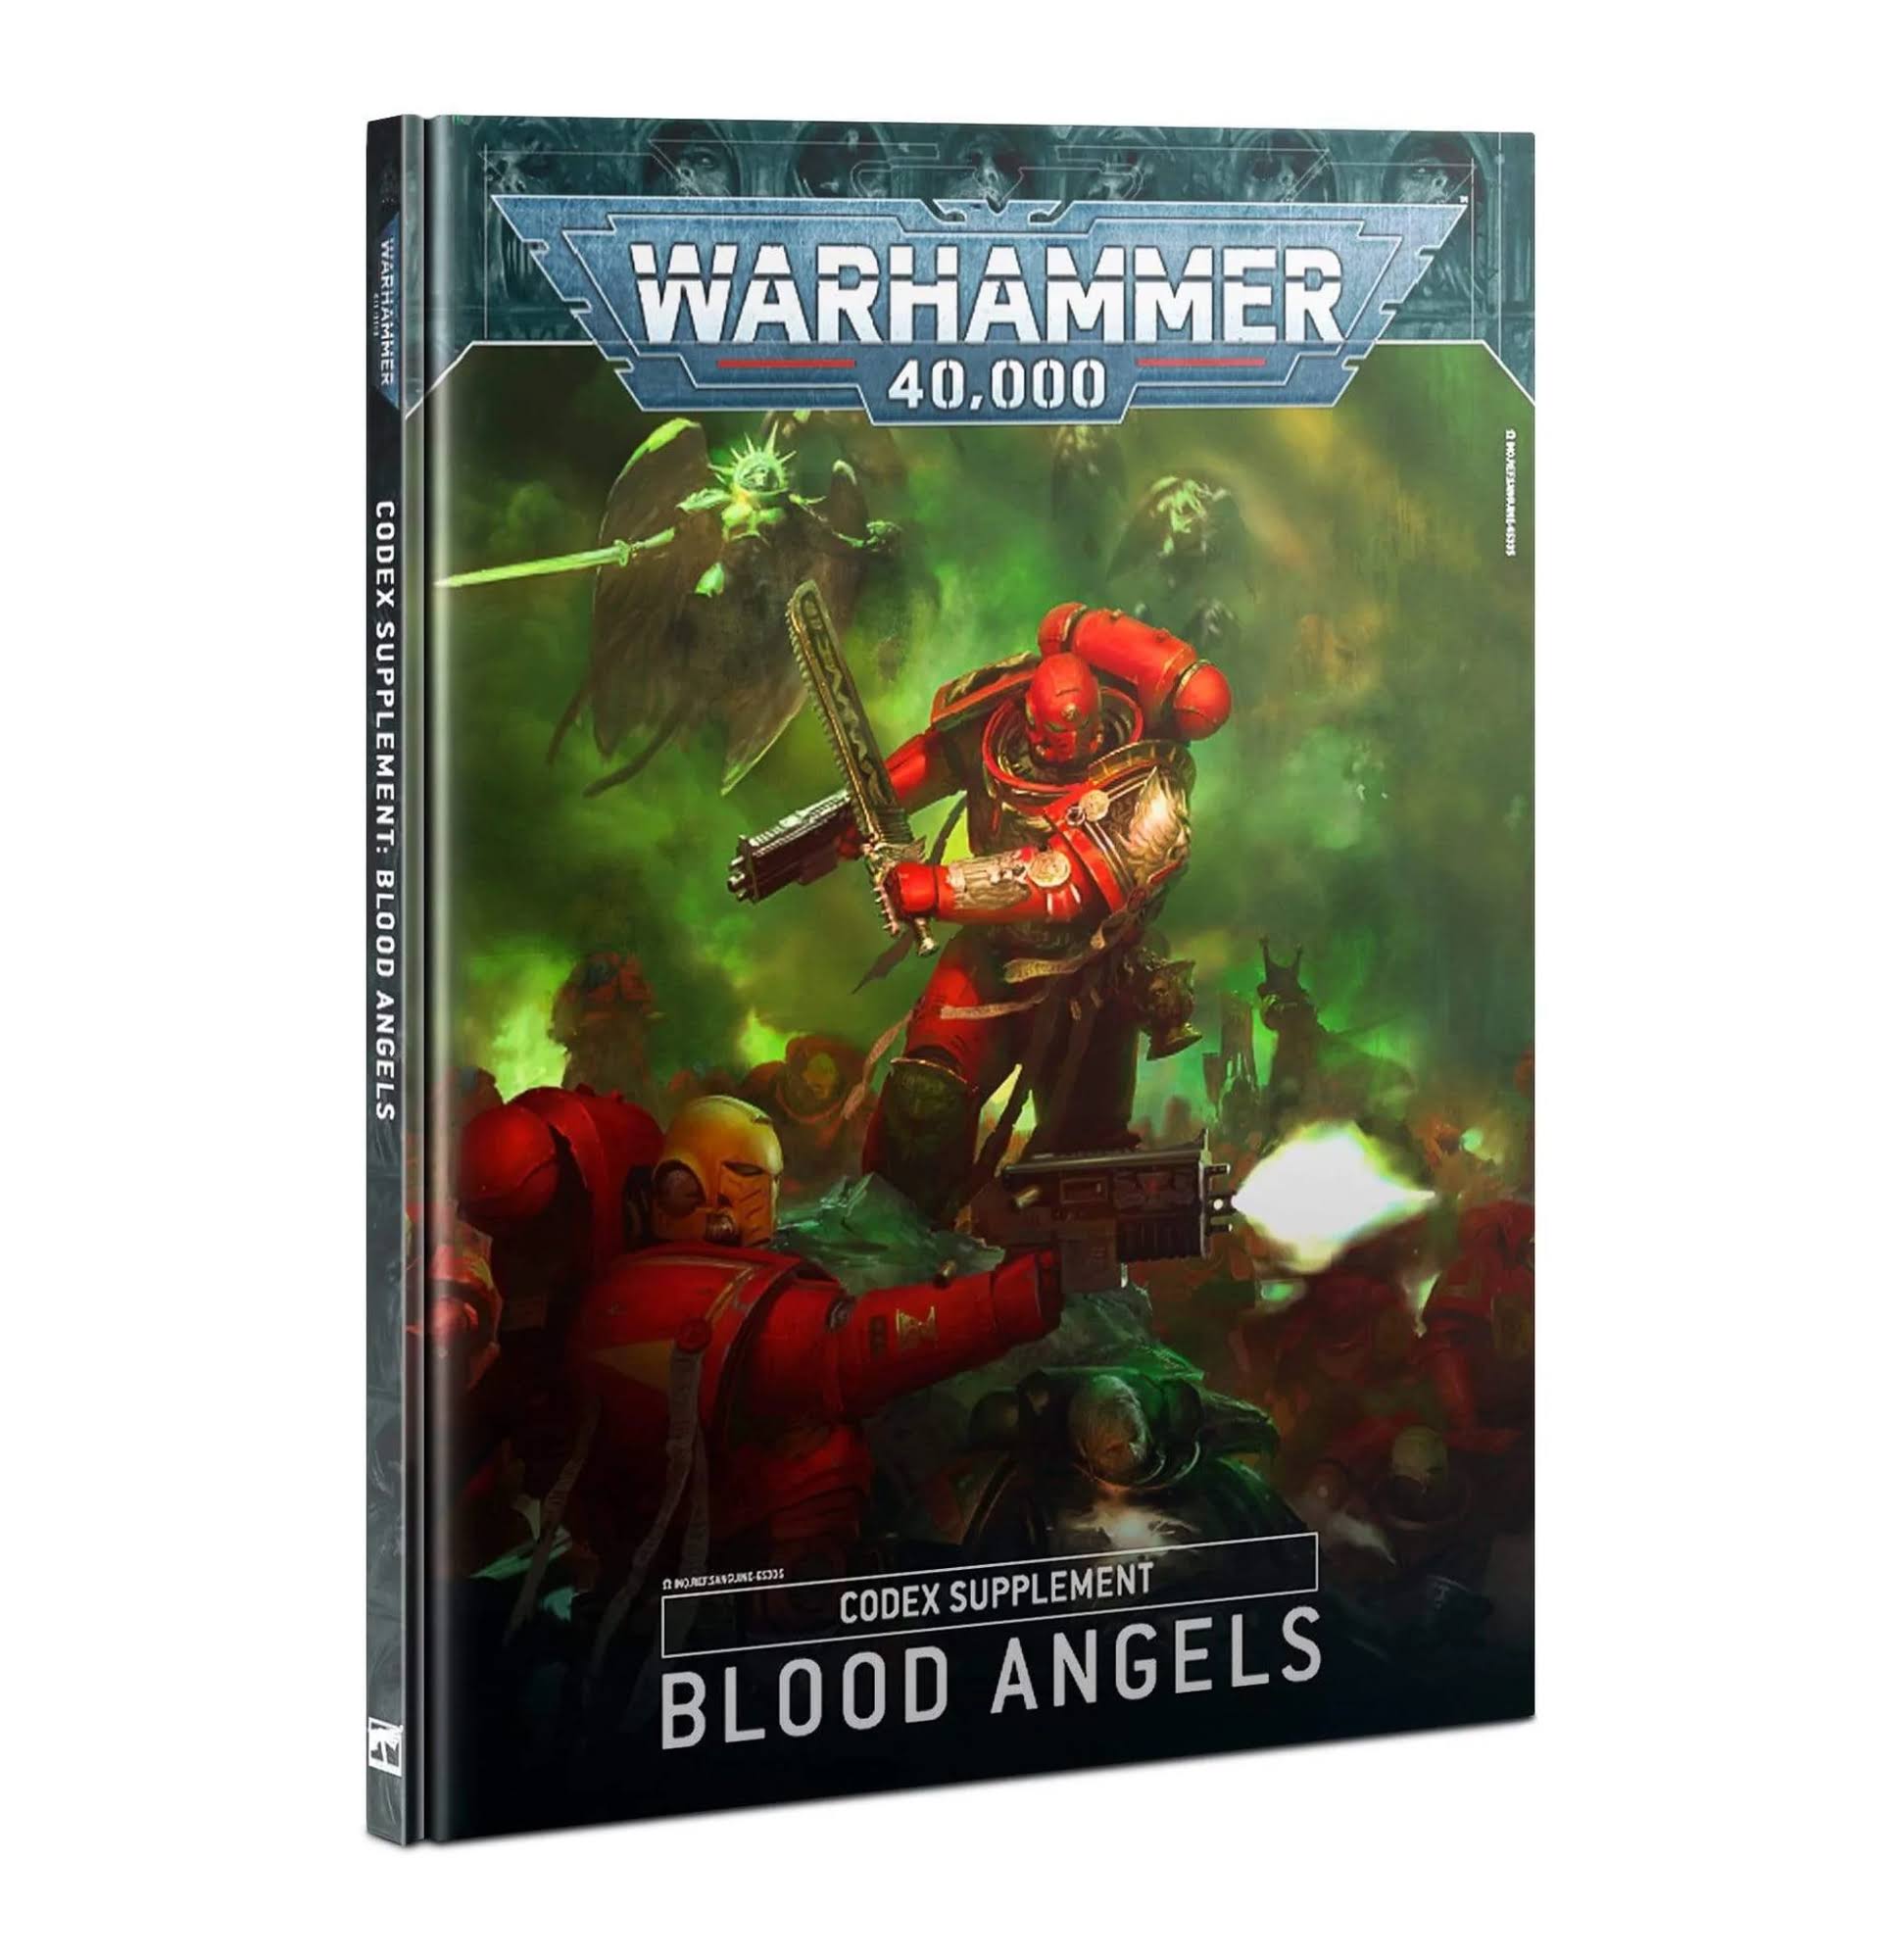 Warhammer 40,000: Blood Angels Codex Supplement [Book]